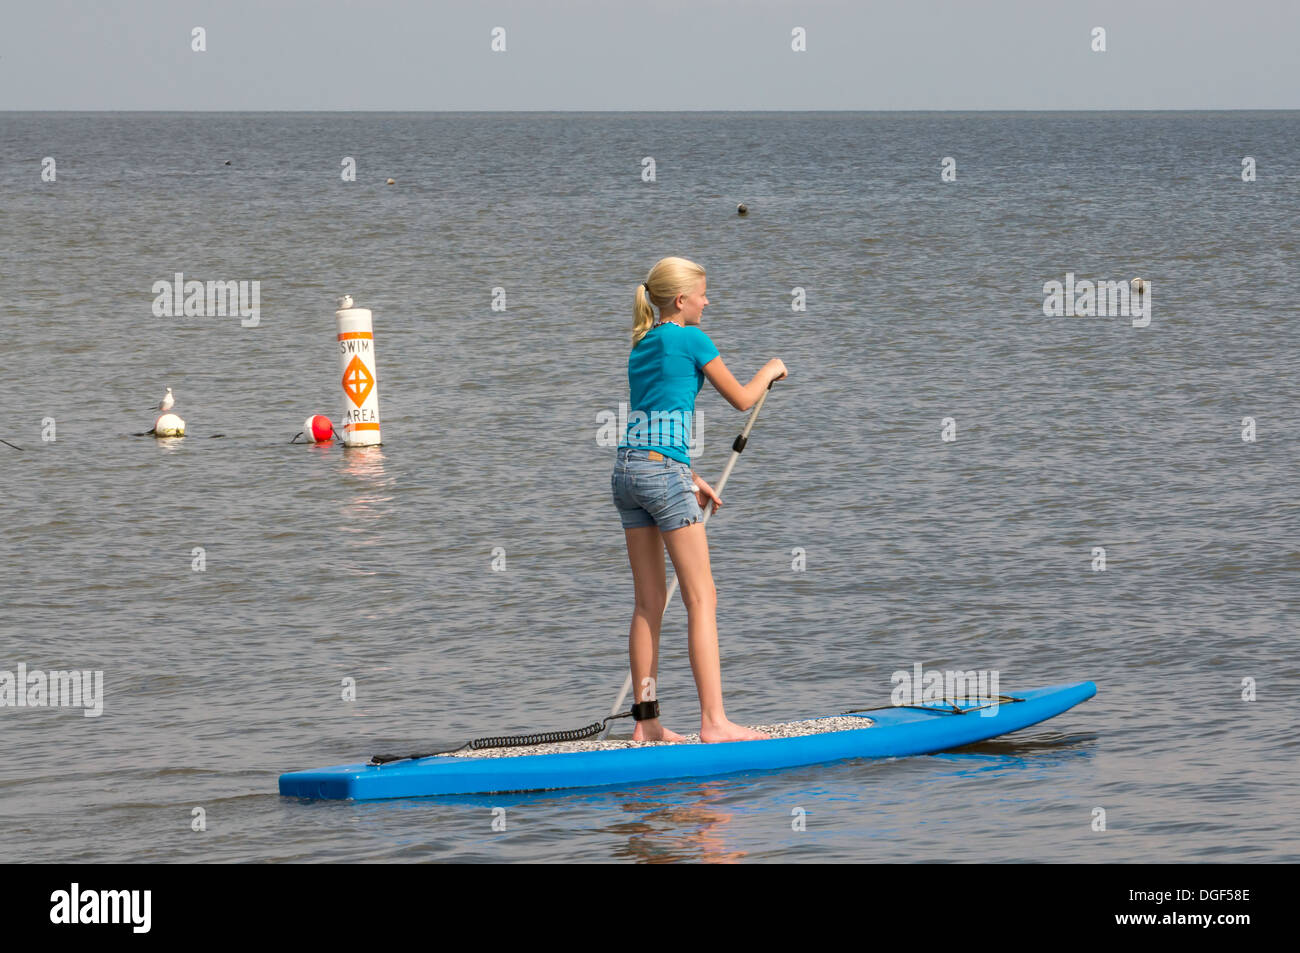 Young woman wearing blue shorts et T-shirt sur le SUP stand up paddleboard sur eaux calmes tout en étant à proximité d'une plage de sable blanc. Banque D'Images